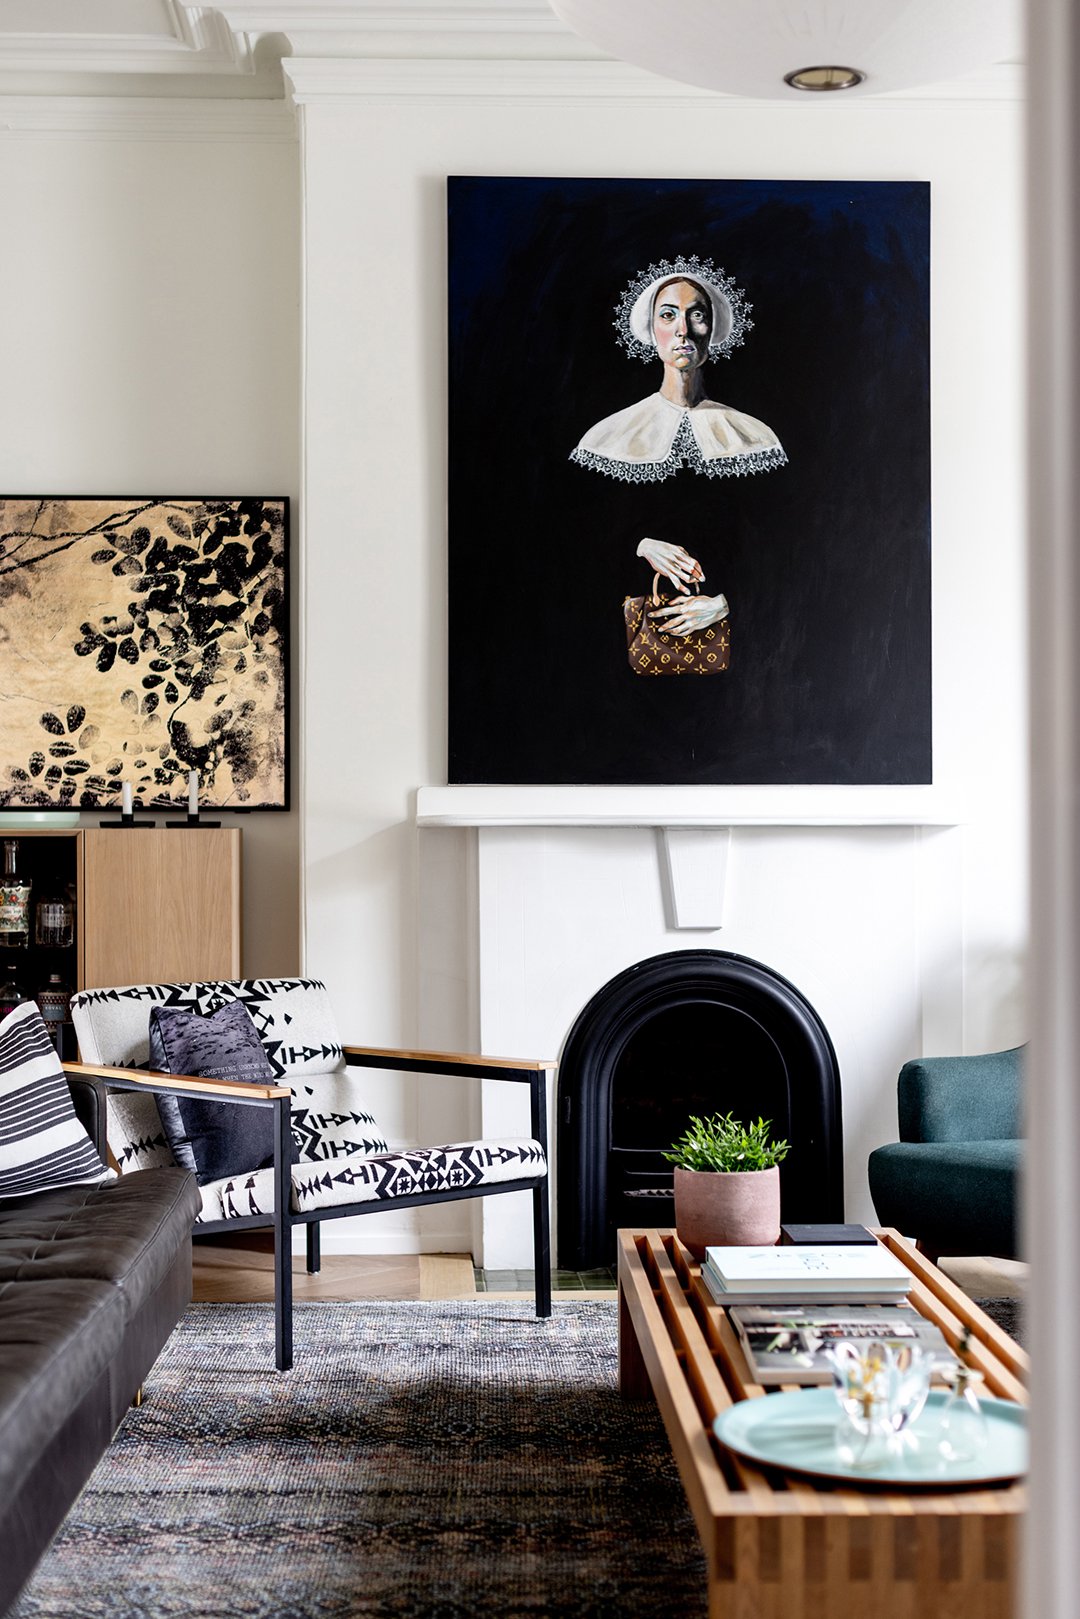 samsung-frame-tv-in-living-room-paired-with-striking-modern-art.jpg